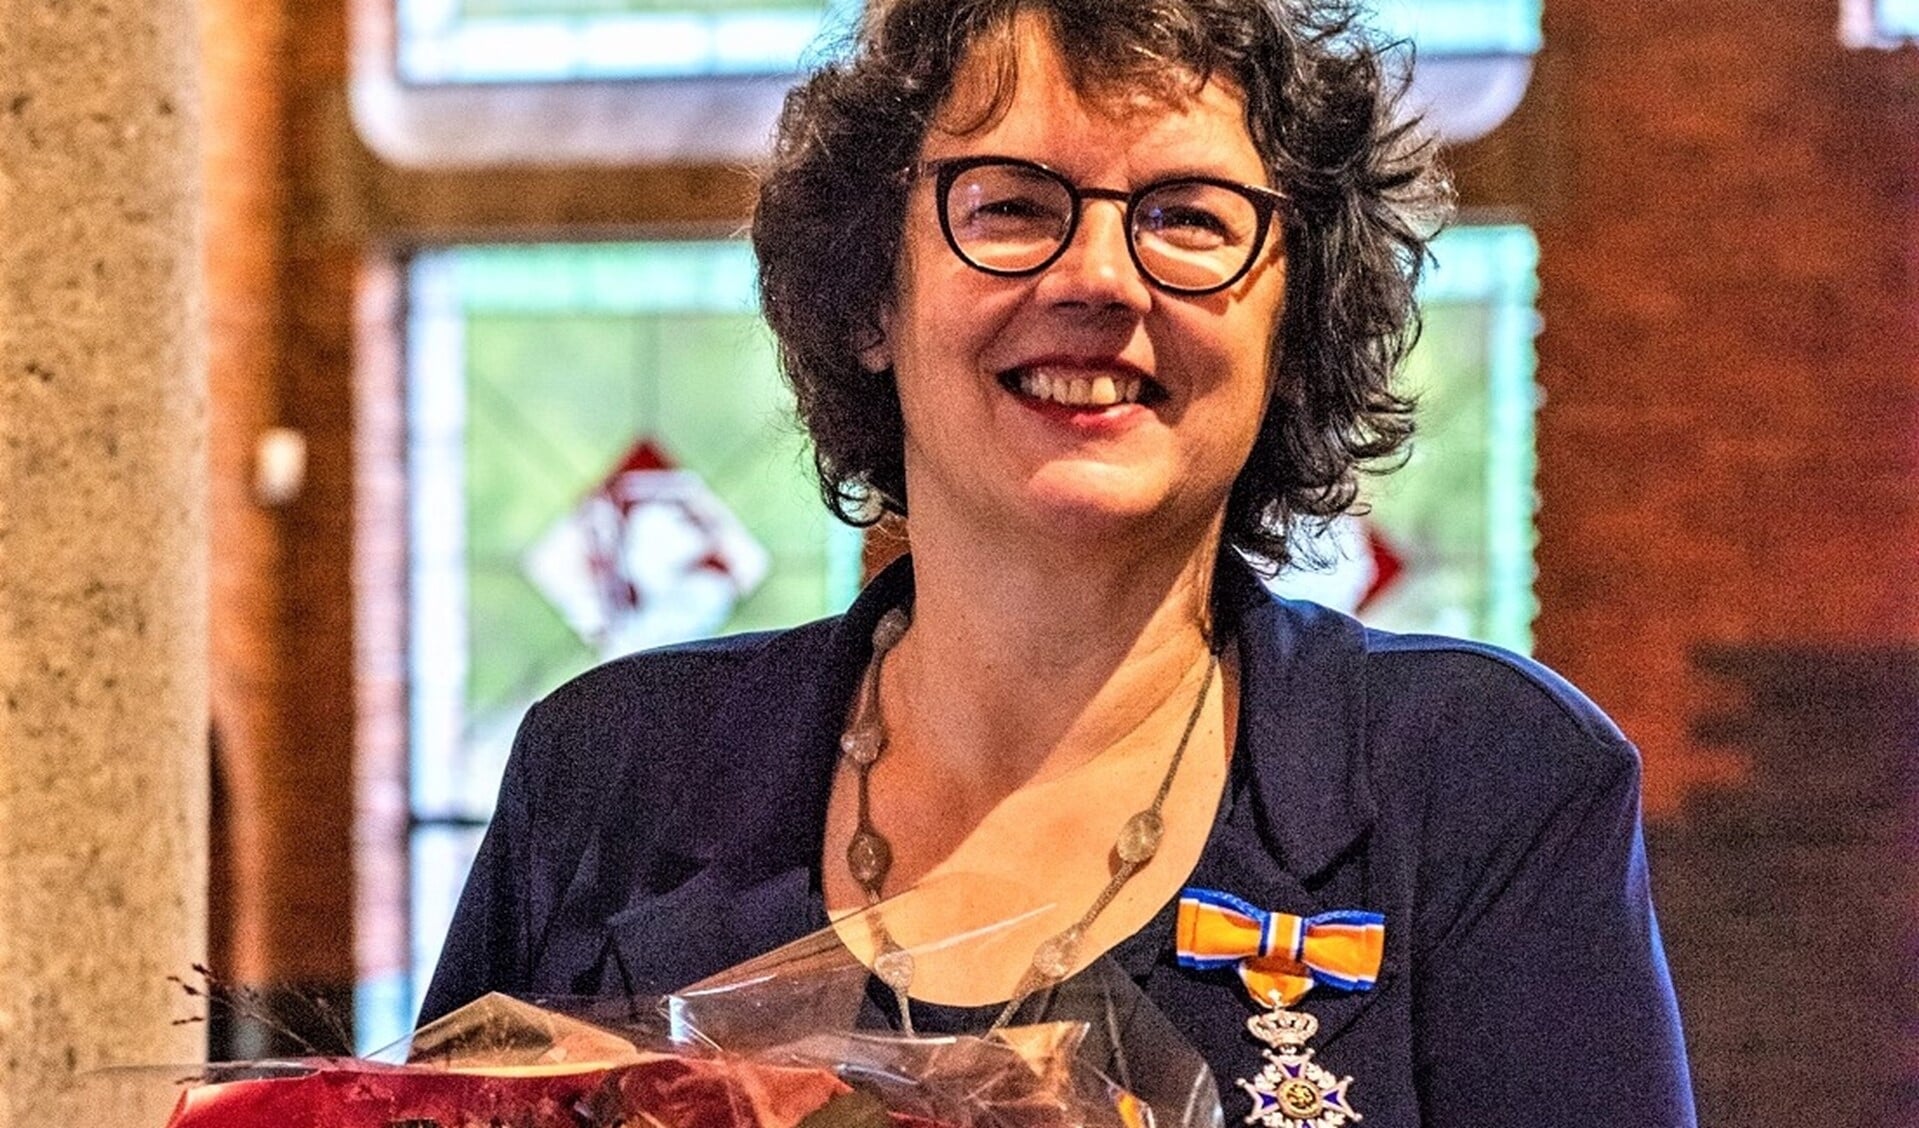 Mevrouw Van der Steen zet zich al bijna 40 jaar lang nationaal en internationaal in voor gendergeschiedenis en de vertegenwoordiging van vrouwen (foto: gemeente LV).